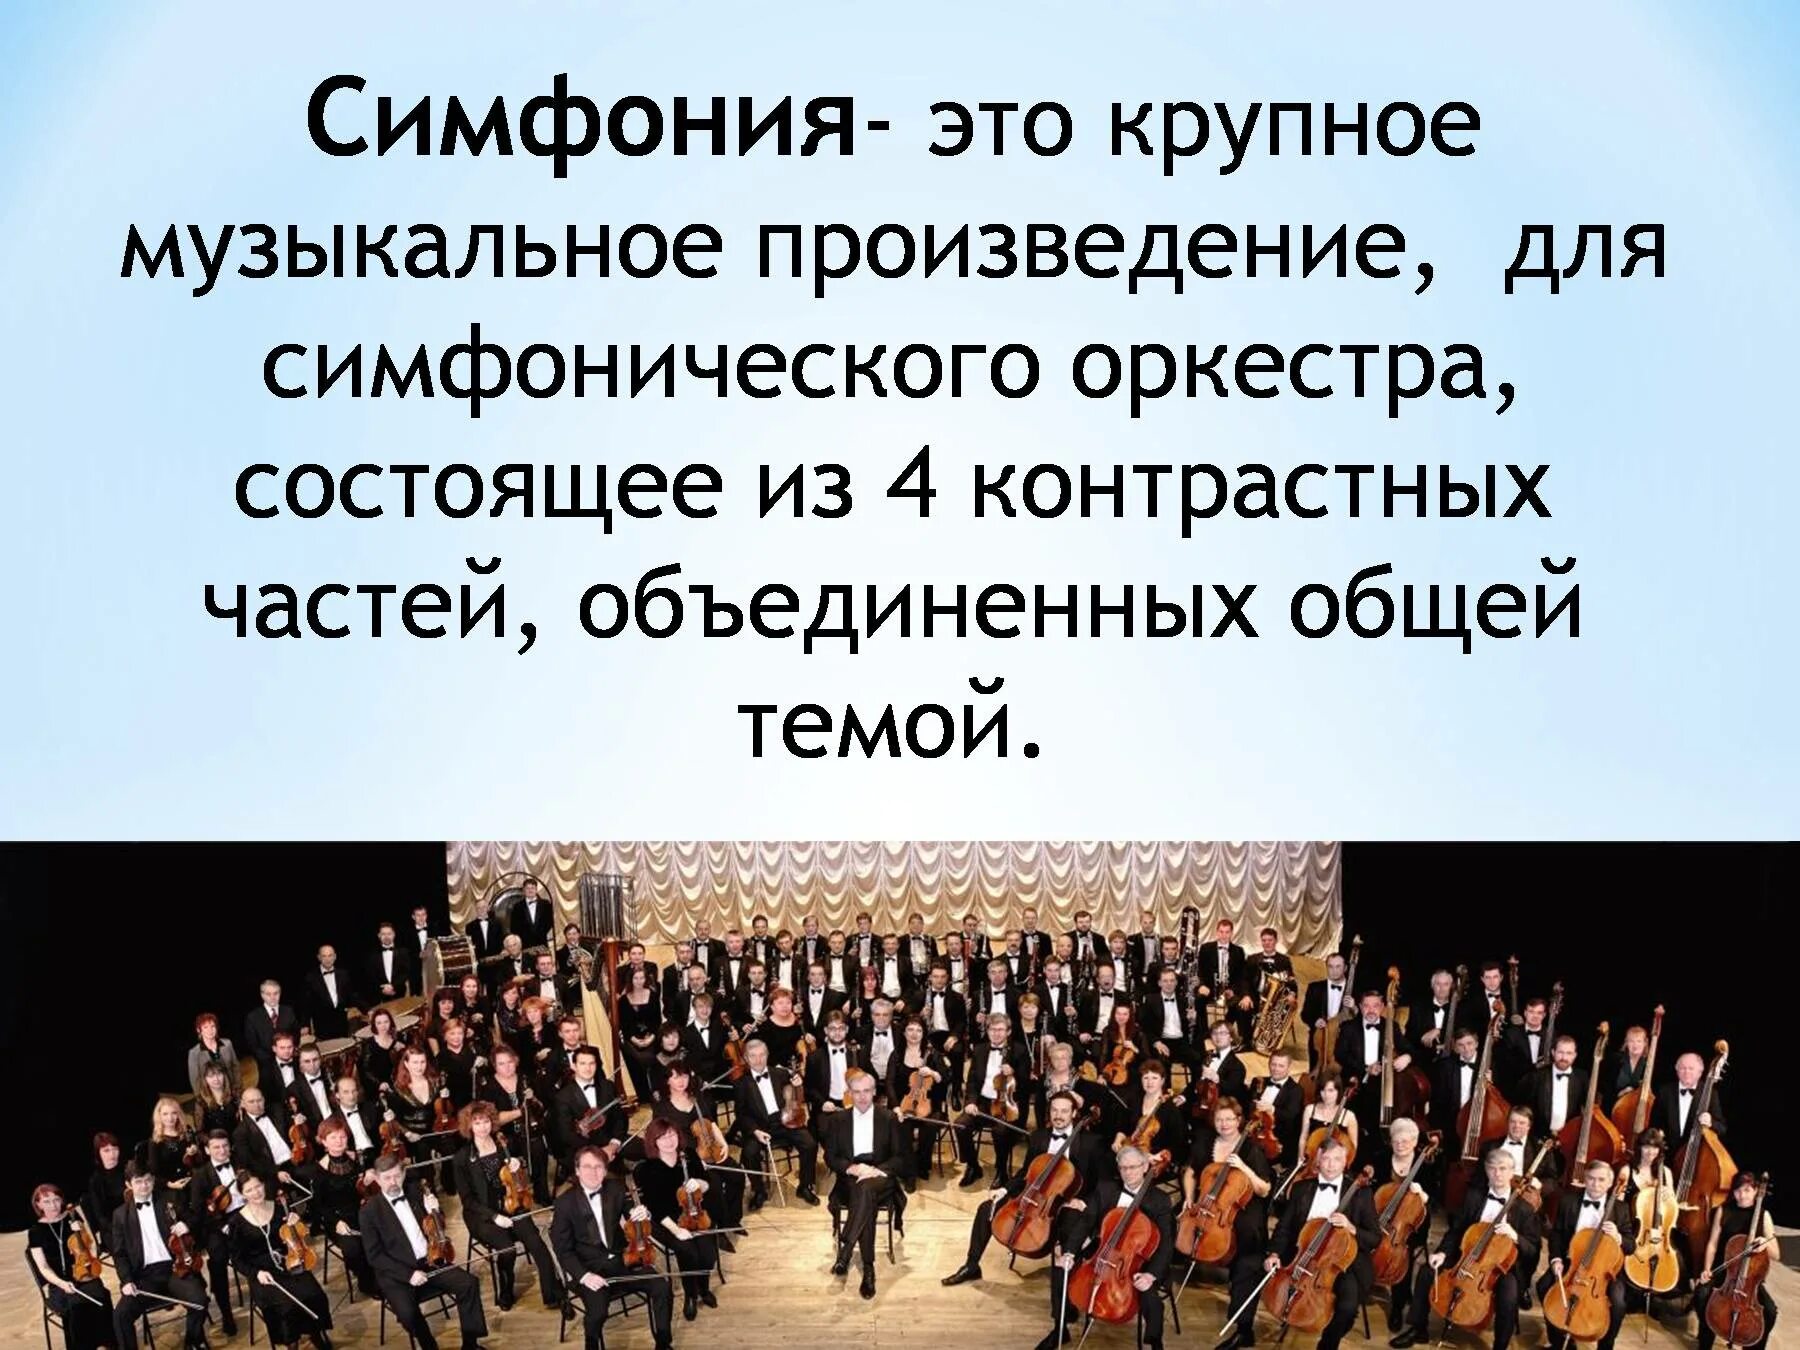 Симфоническая музыка произведения. Симфония. Произведения для симфонического оркестра. Симфония-это музыкальное произведение. Музыкальное произведение для симфонического оркестра.